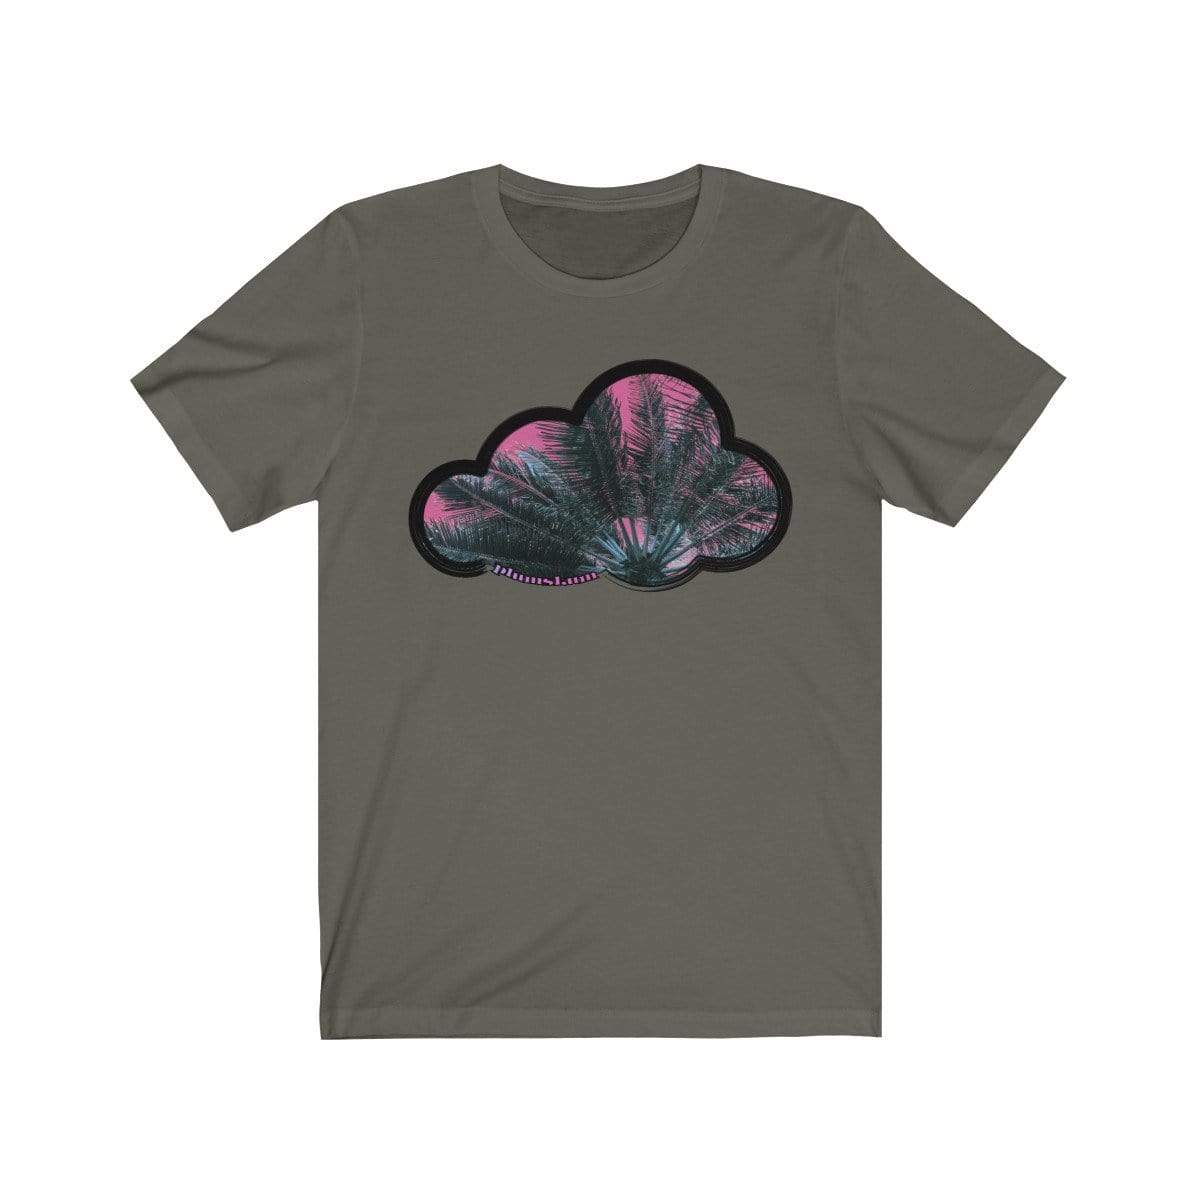 Printify T-Shirt Army / M Palm Sky Art Clouds T-Shirt